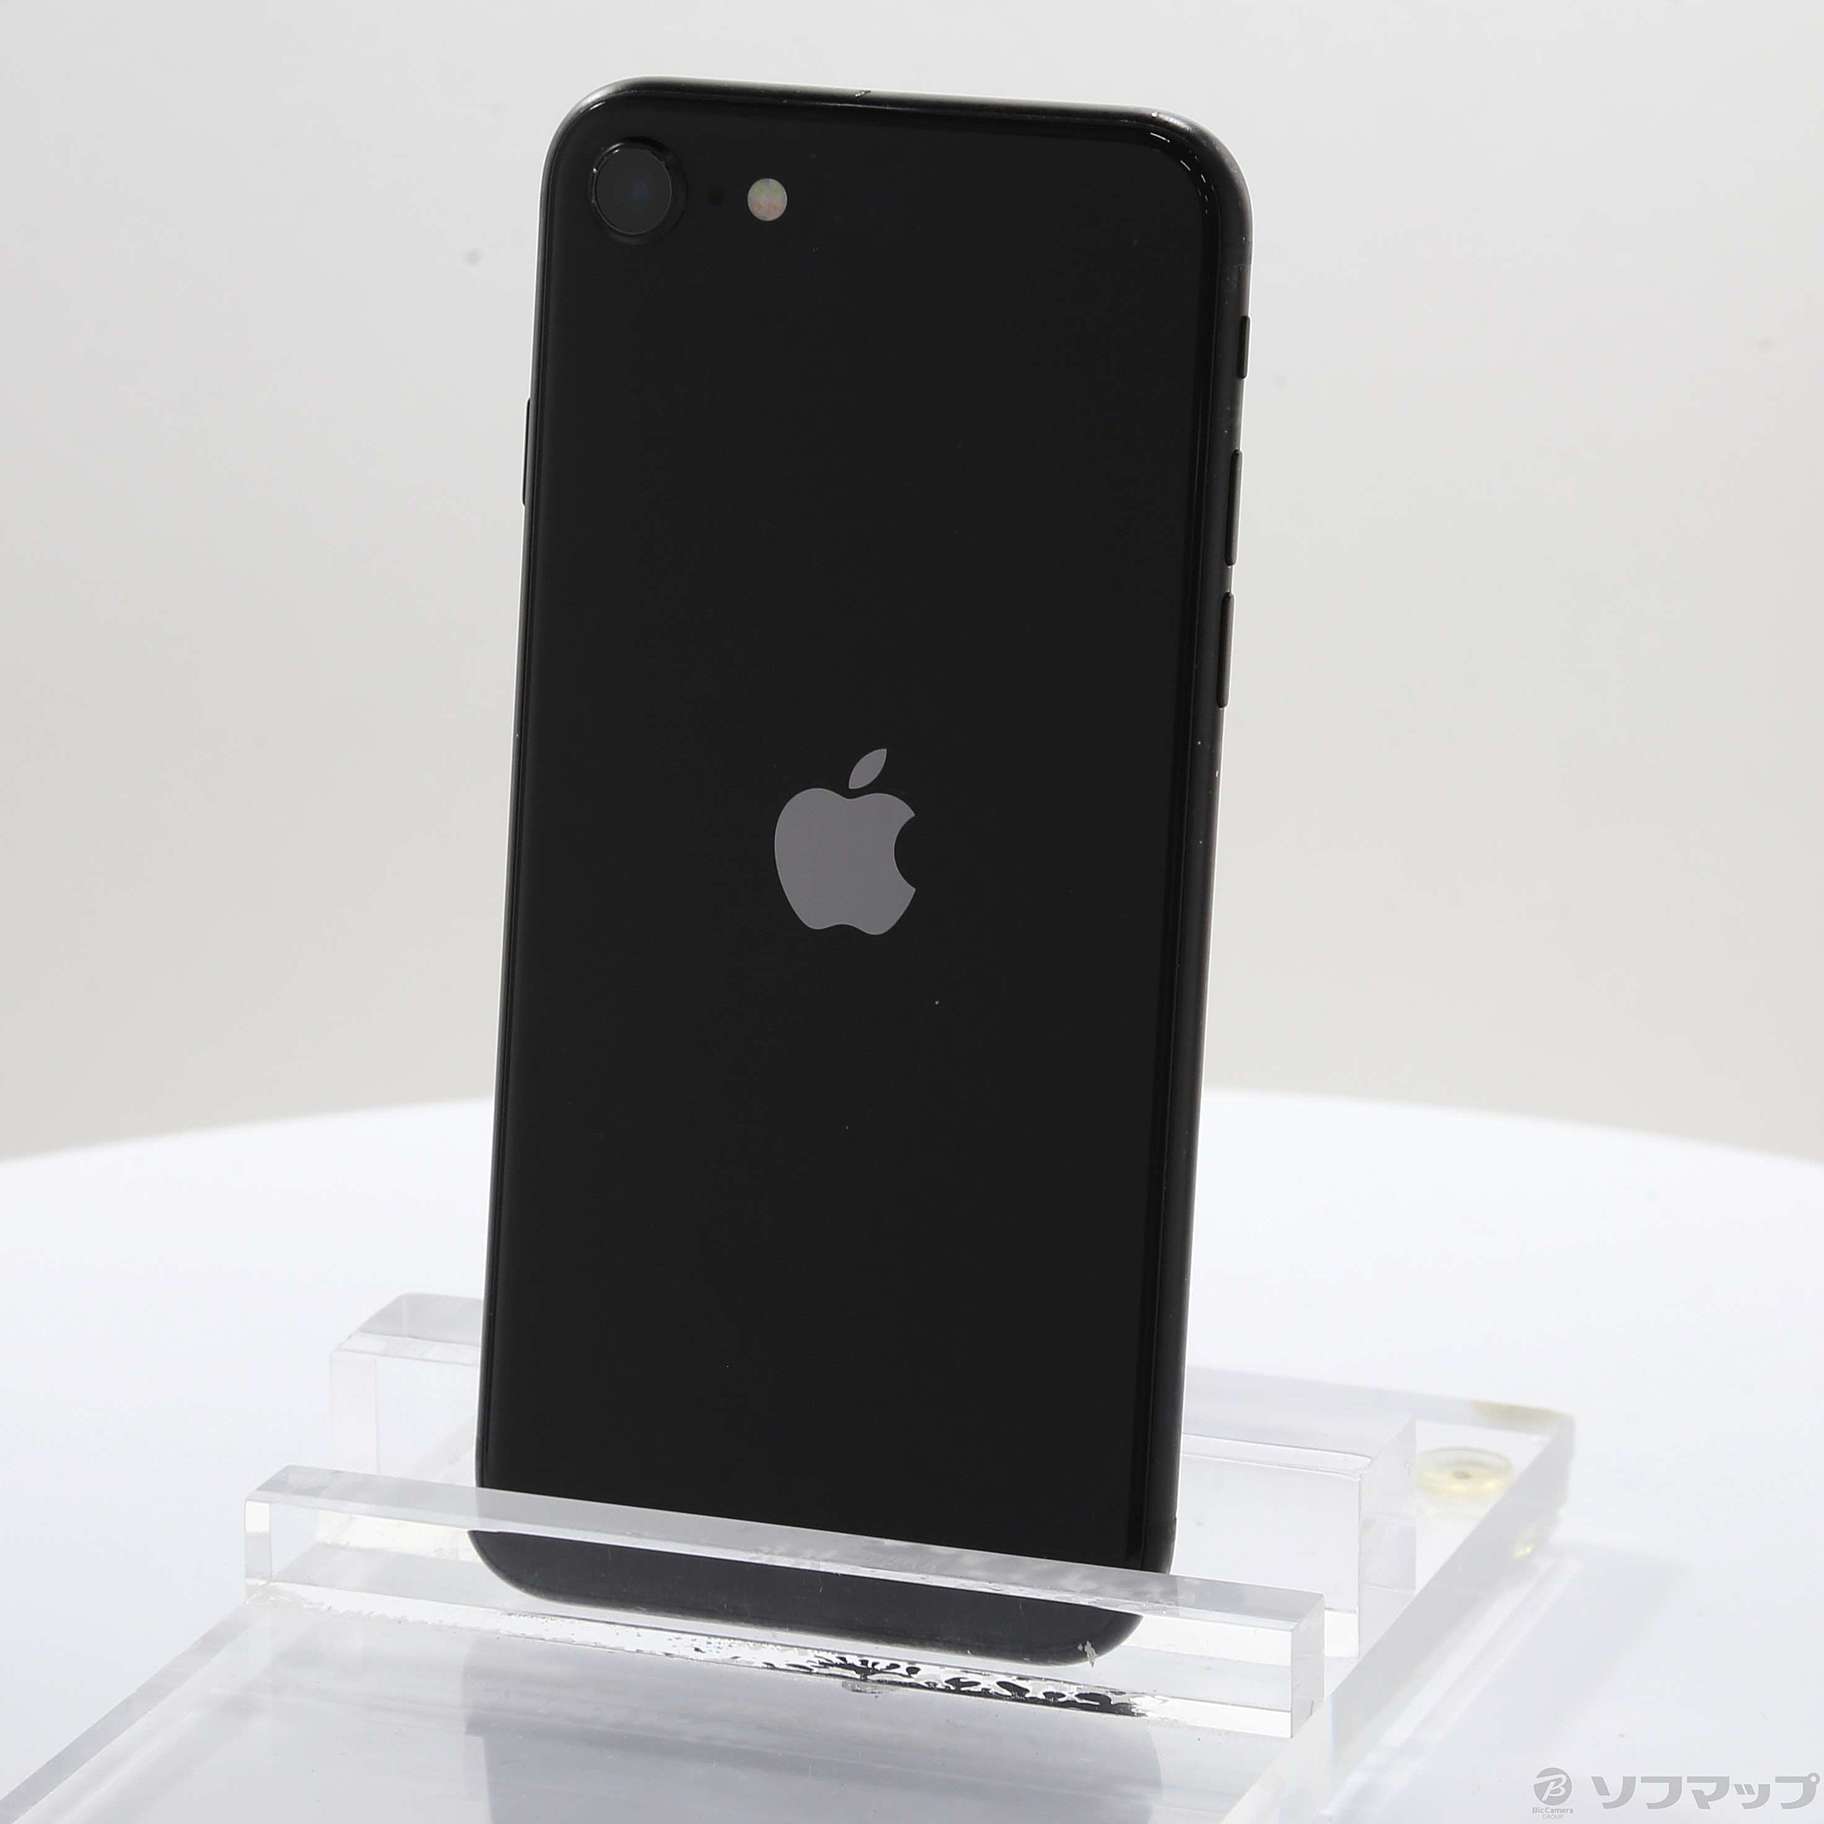 お買い得人気iPhone SE(第2世代)Space Gray 64 GB SIMフリー スマートフォン本体